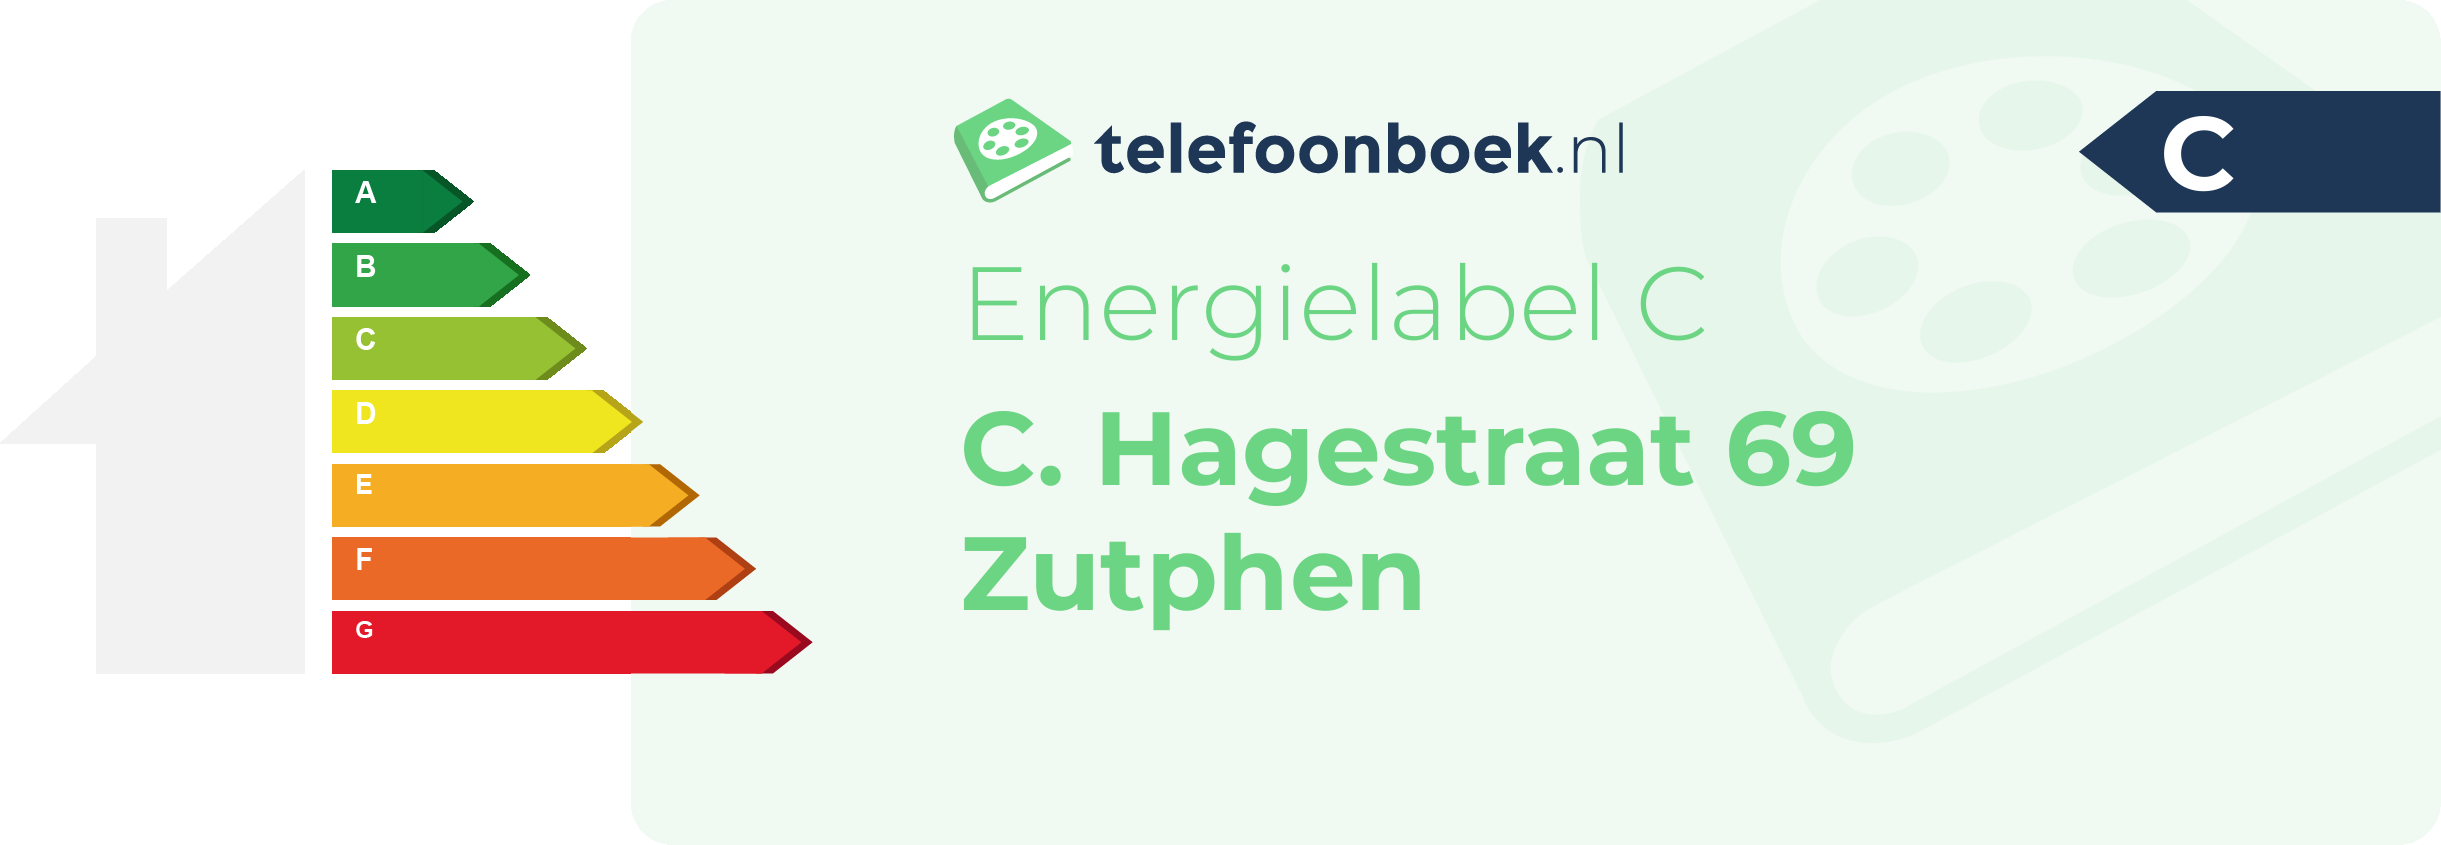 Energielabel C. Hagestraat 69 Zutphen